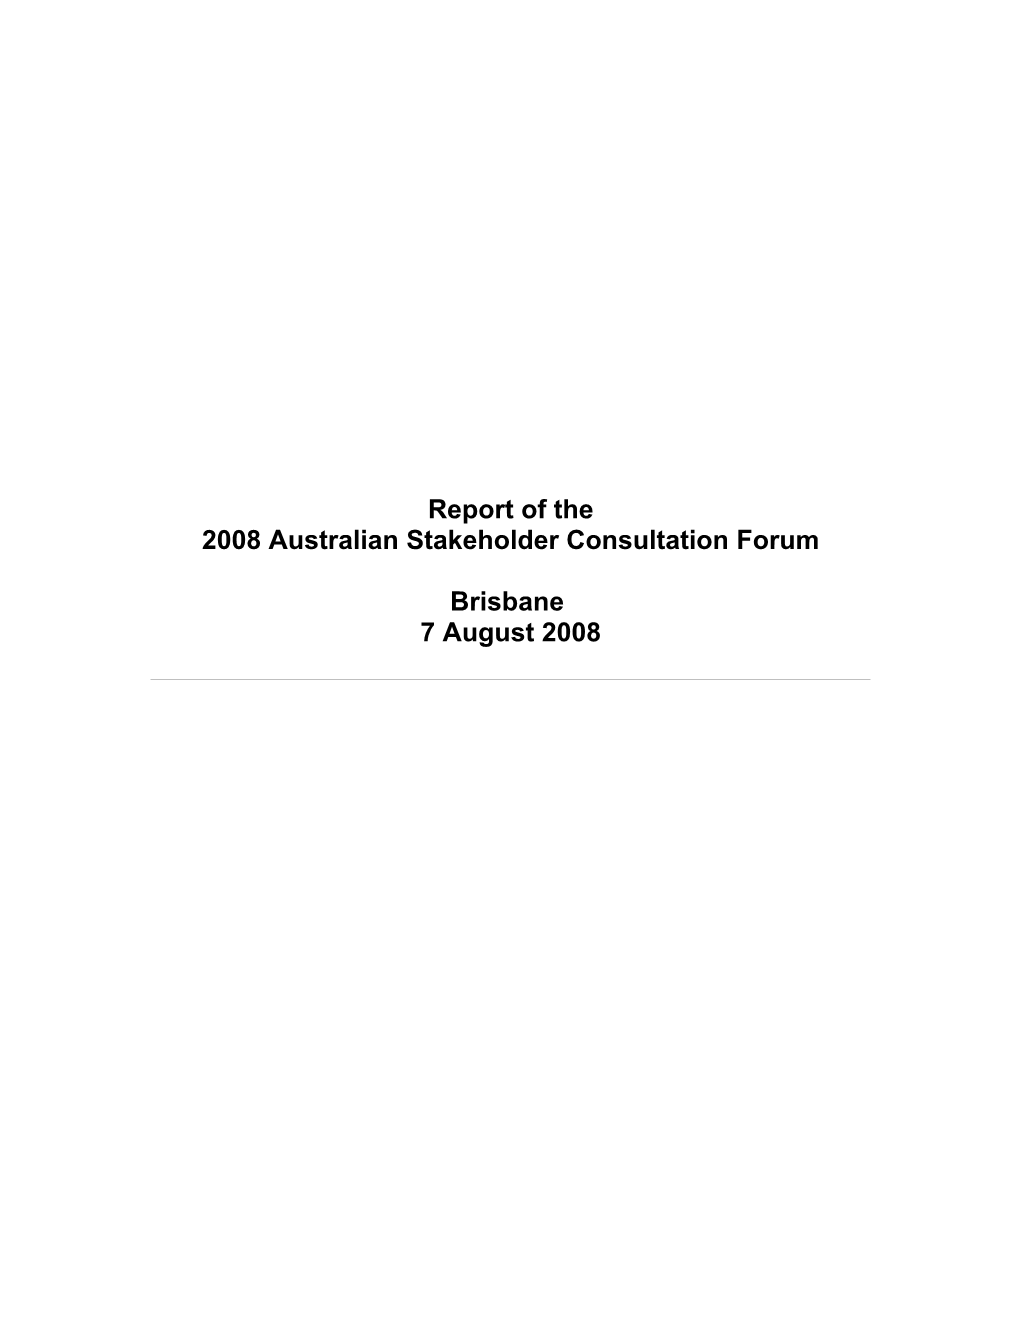 2008 Stakeholder Consultation Forum